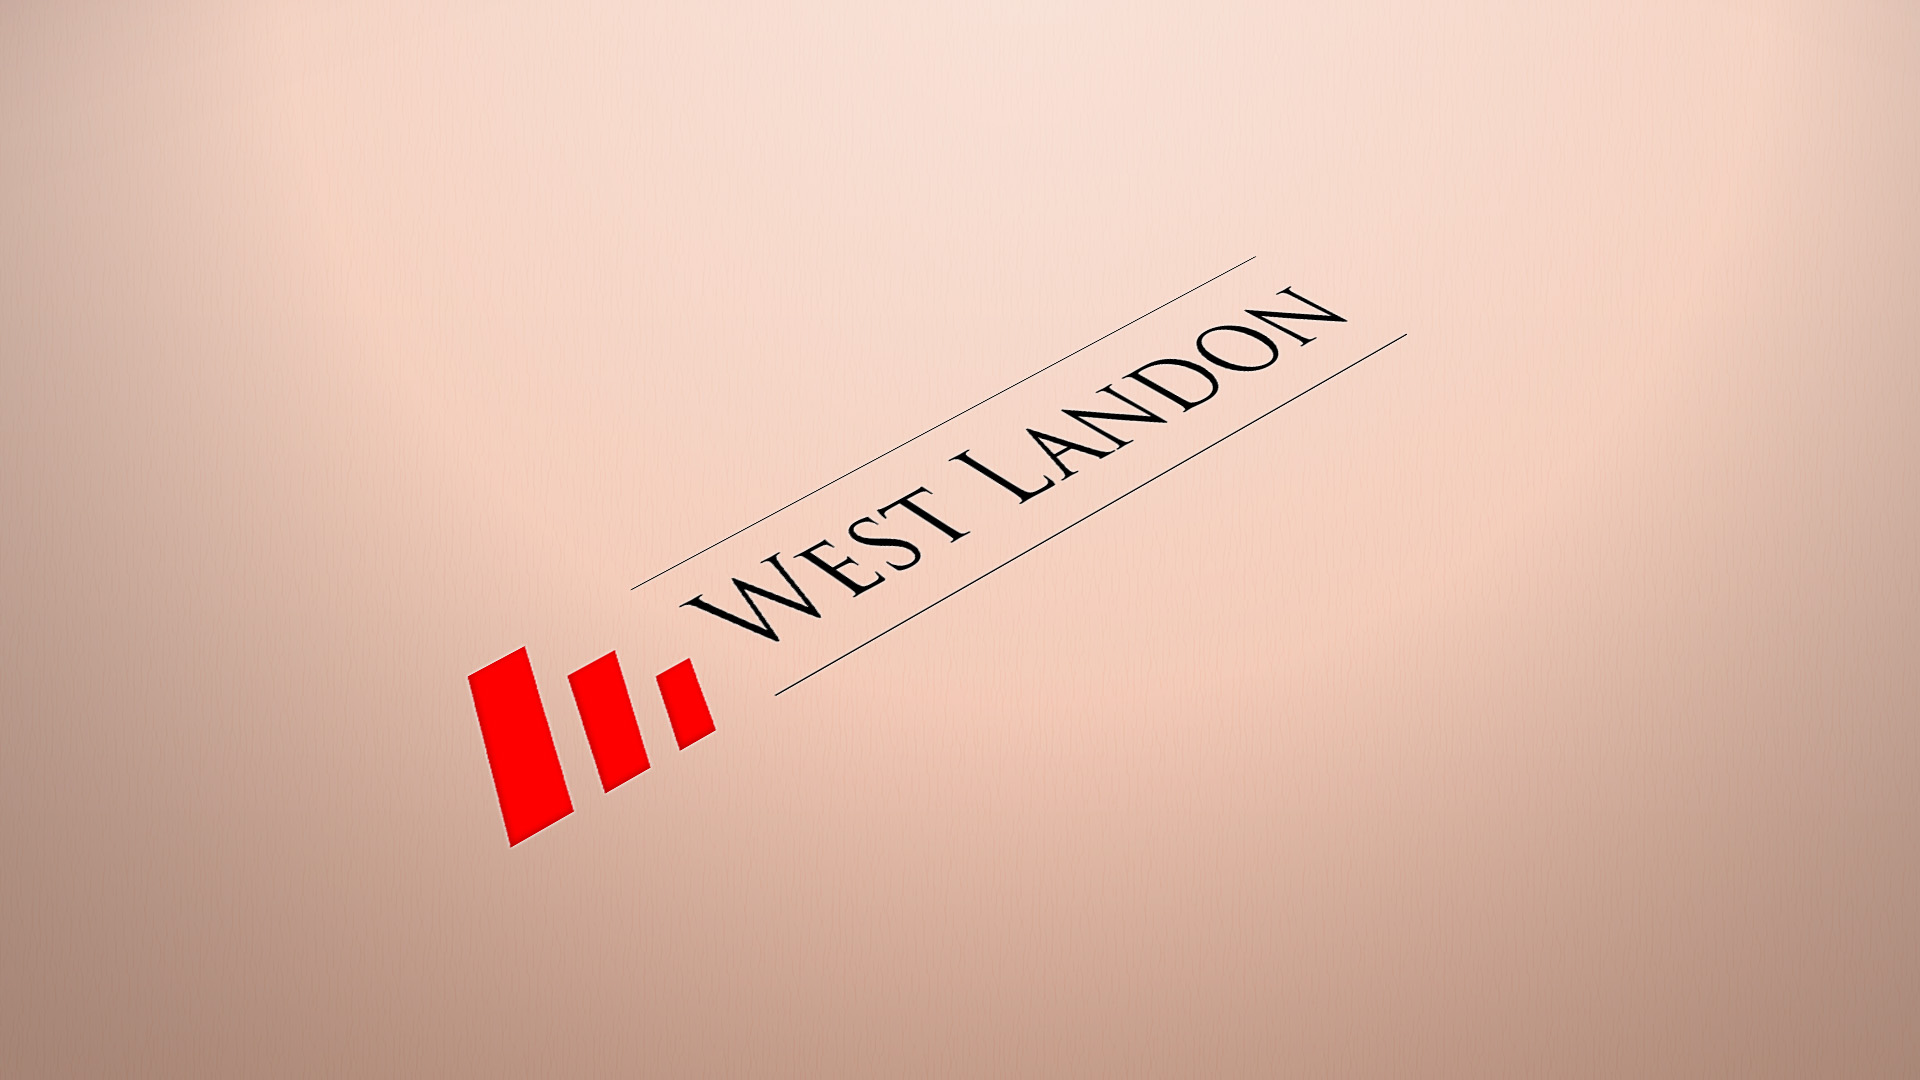 Large West Landon logo printed on white cardstock in warm lighting.